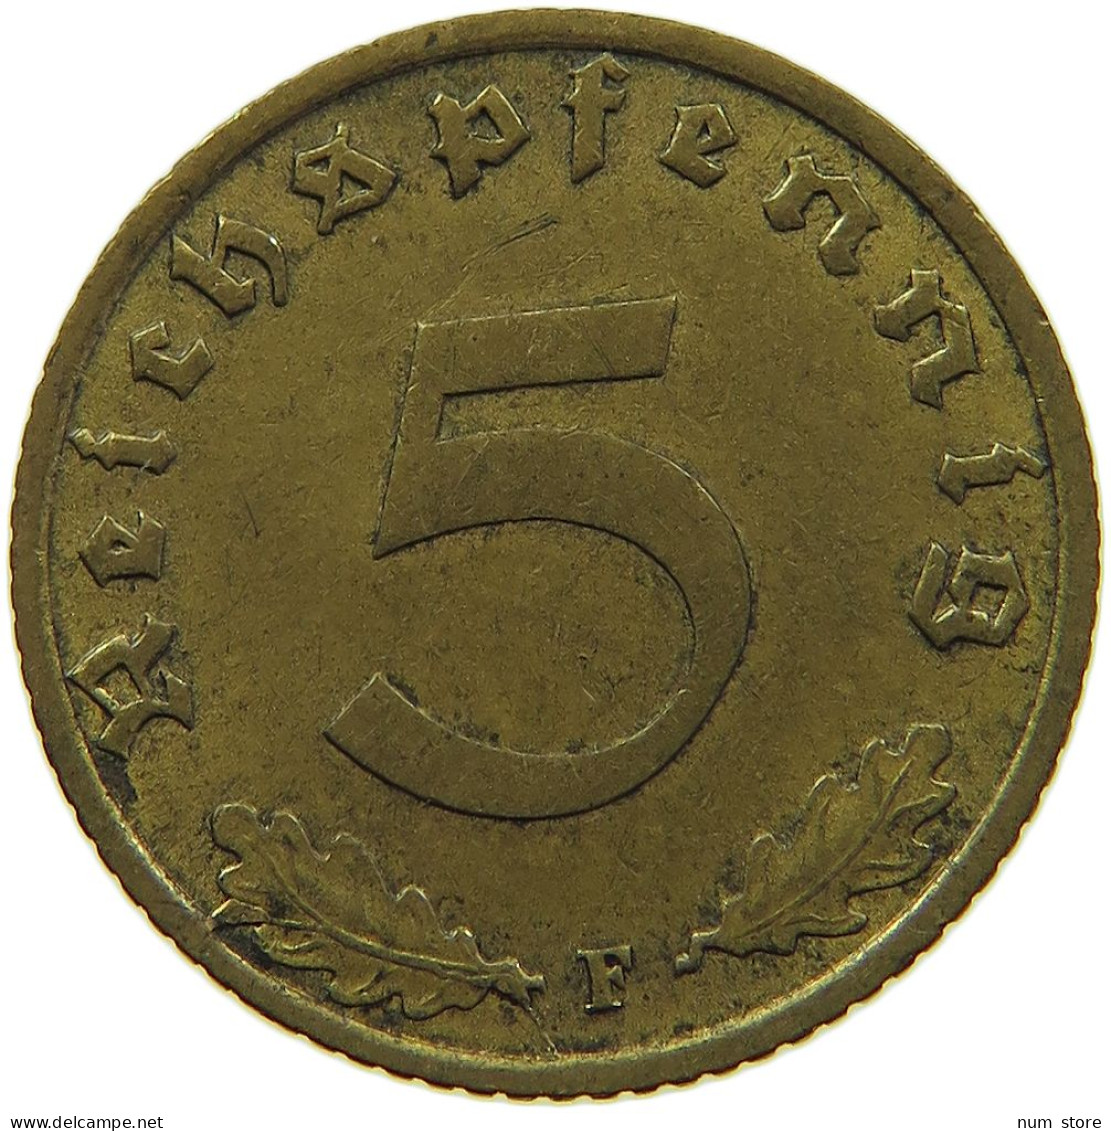 GERMANY 5 REICHSPFENNIG 1939 F #s091 0715 - 5 Reichspfennig